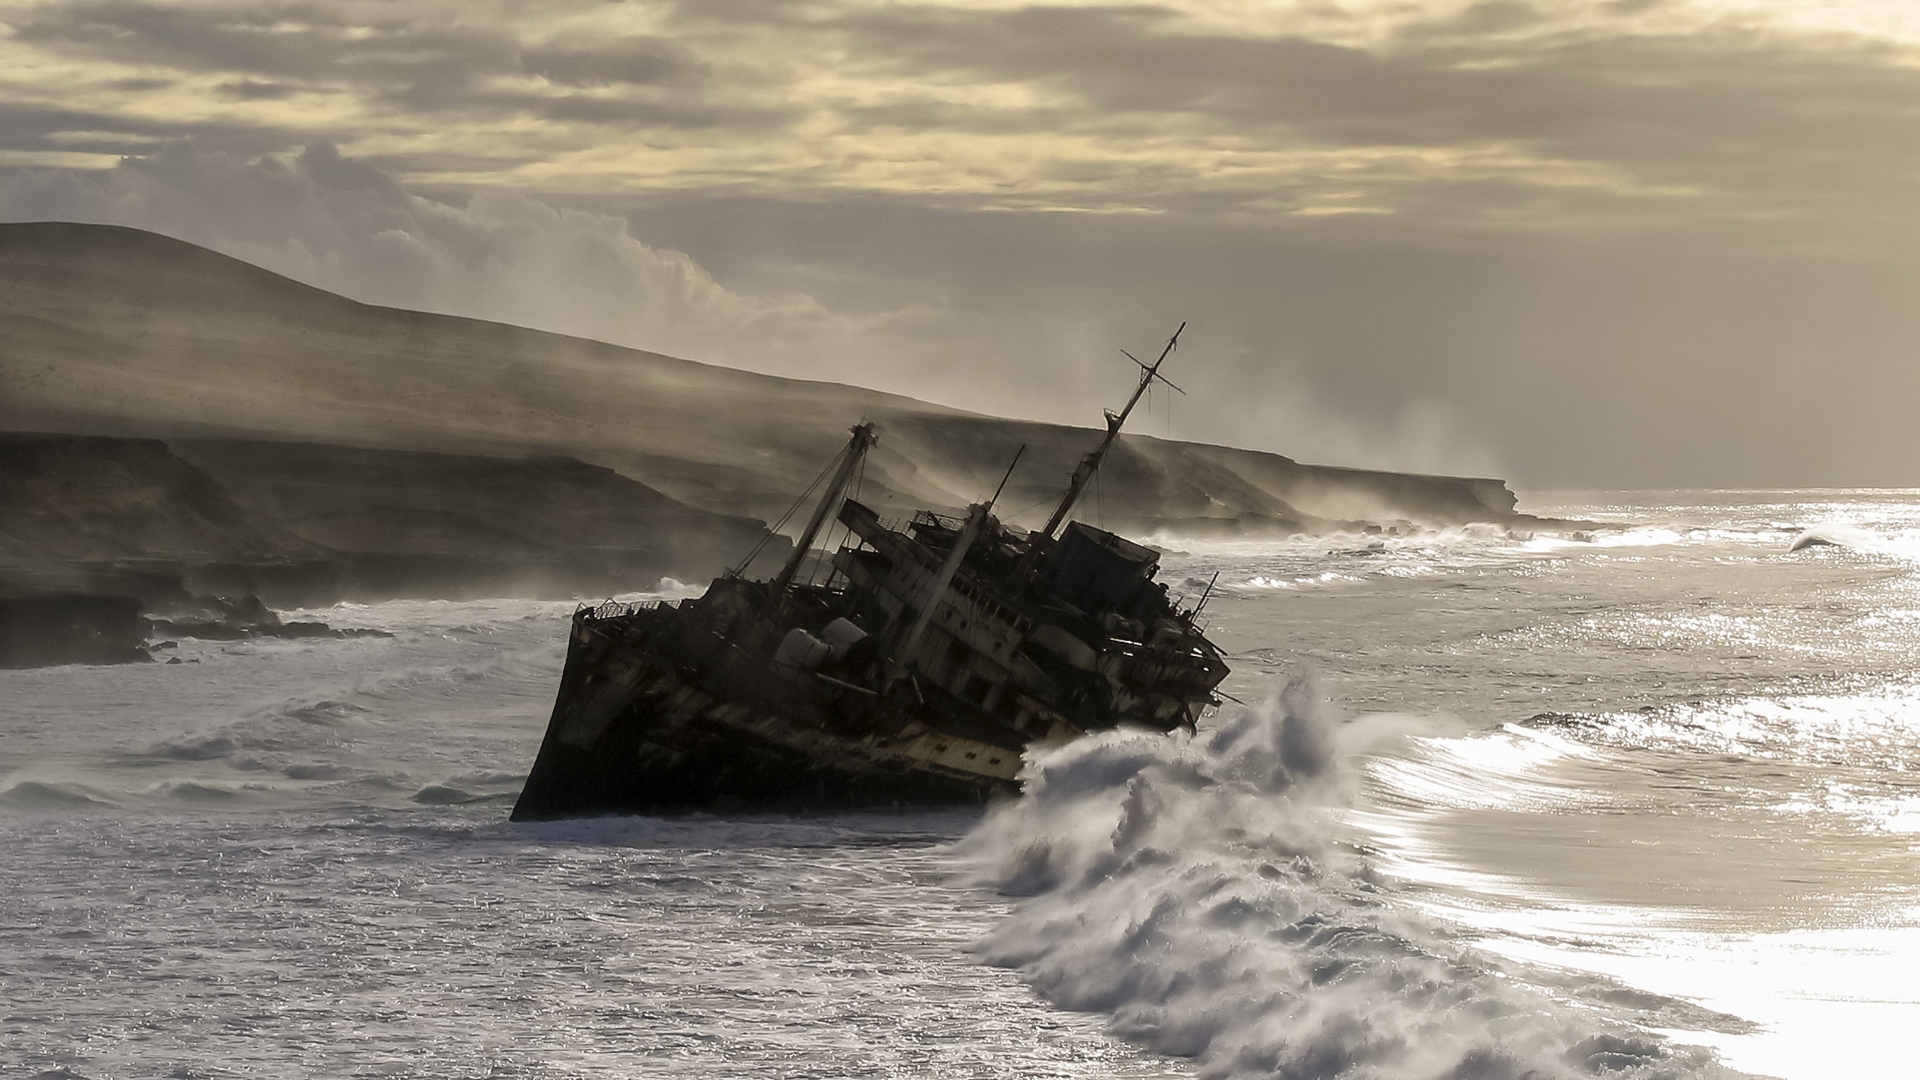 General 1920x1080 American Star shipwreck Fuerteventura Canary Islands atlantic ocean Pedro Lopez Batista sea waves mist coast